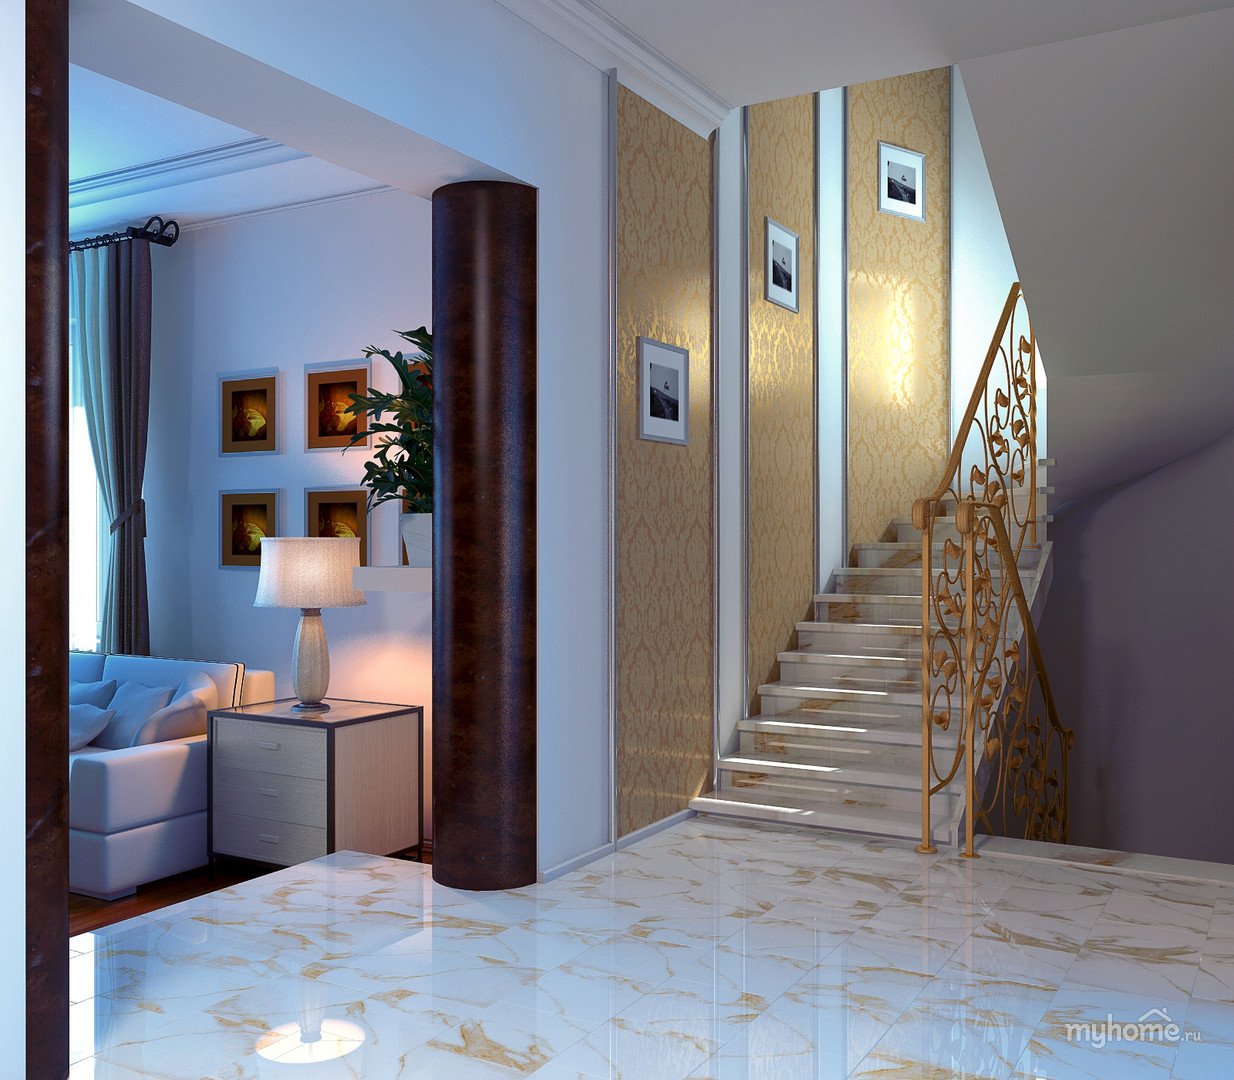 Фото коридор в доме: Прихожая в частном доме - фото оригинальных идей дизайна в прихожейДекор и дизайн интерьера